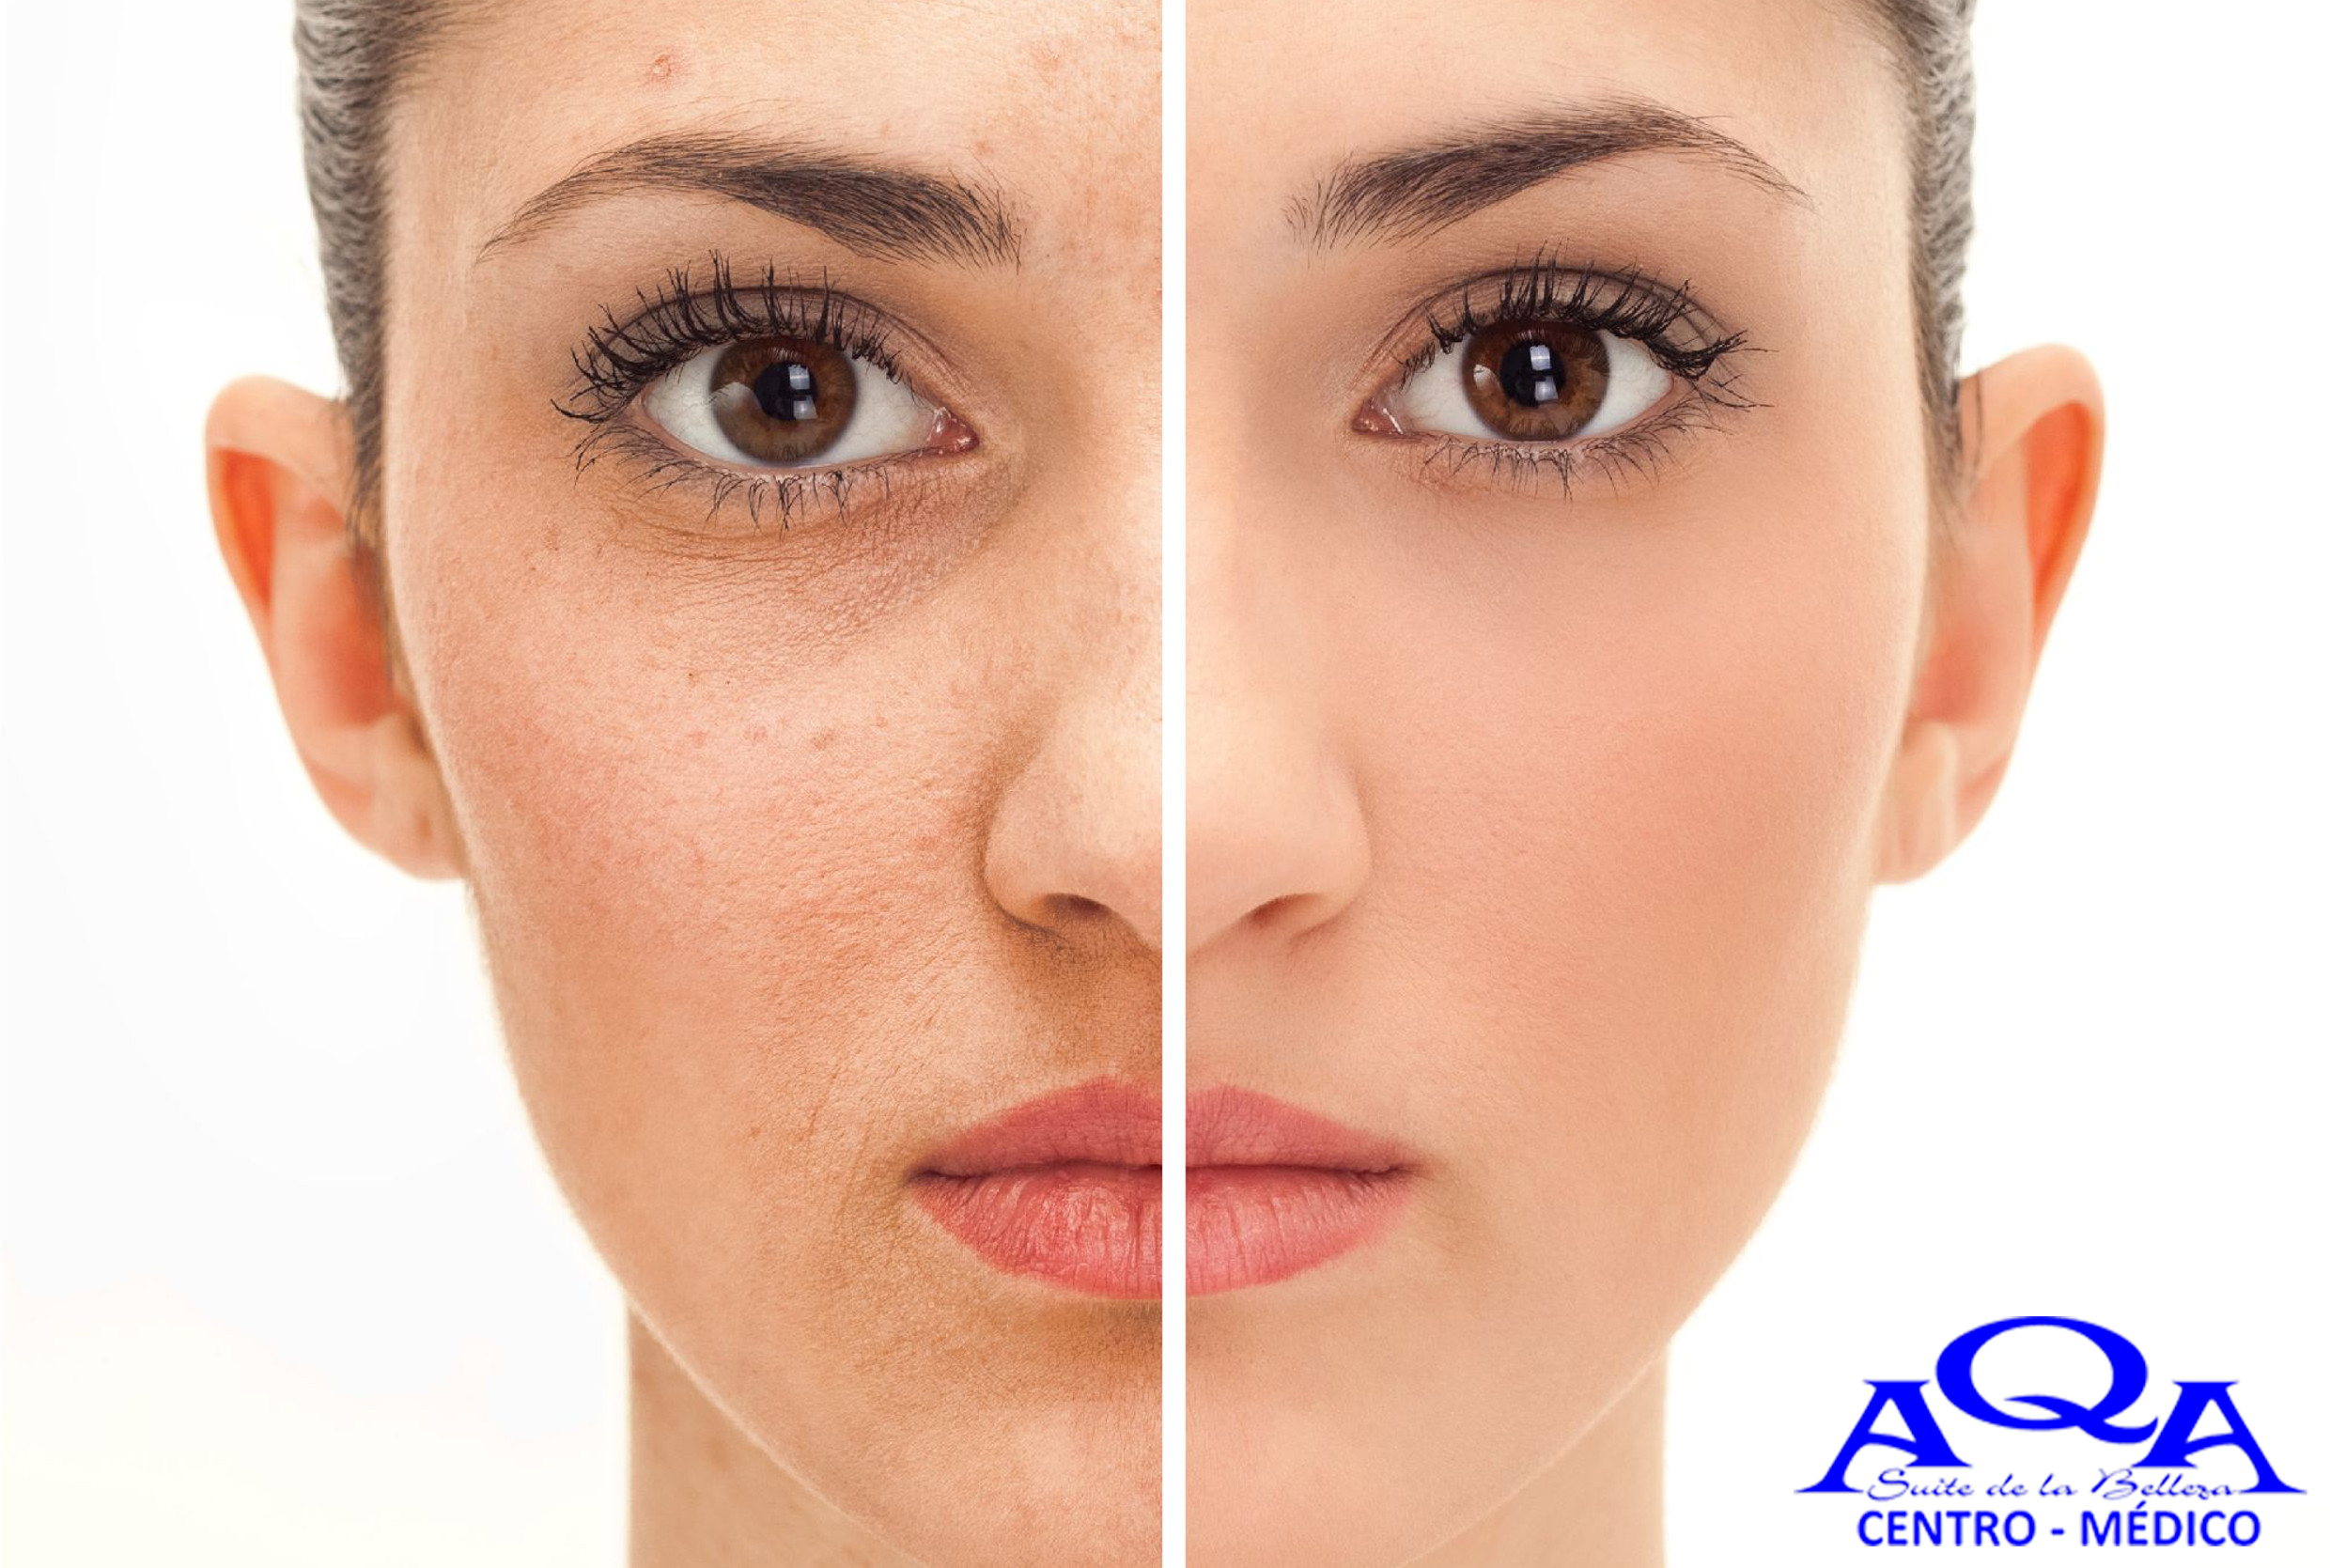 Tratamiento que trata las imperfecciones de la piel y los poros dilatados. Combinamos tratamientos a base de peeling químicos y fototerapia lumínica.